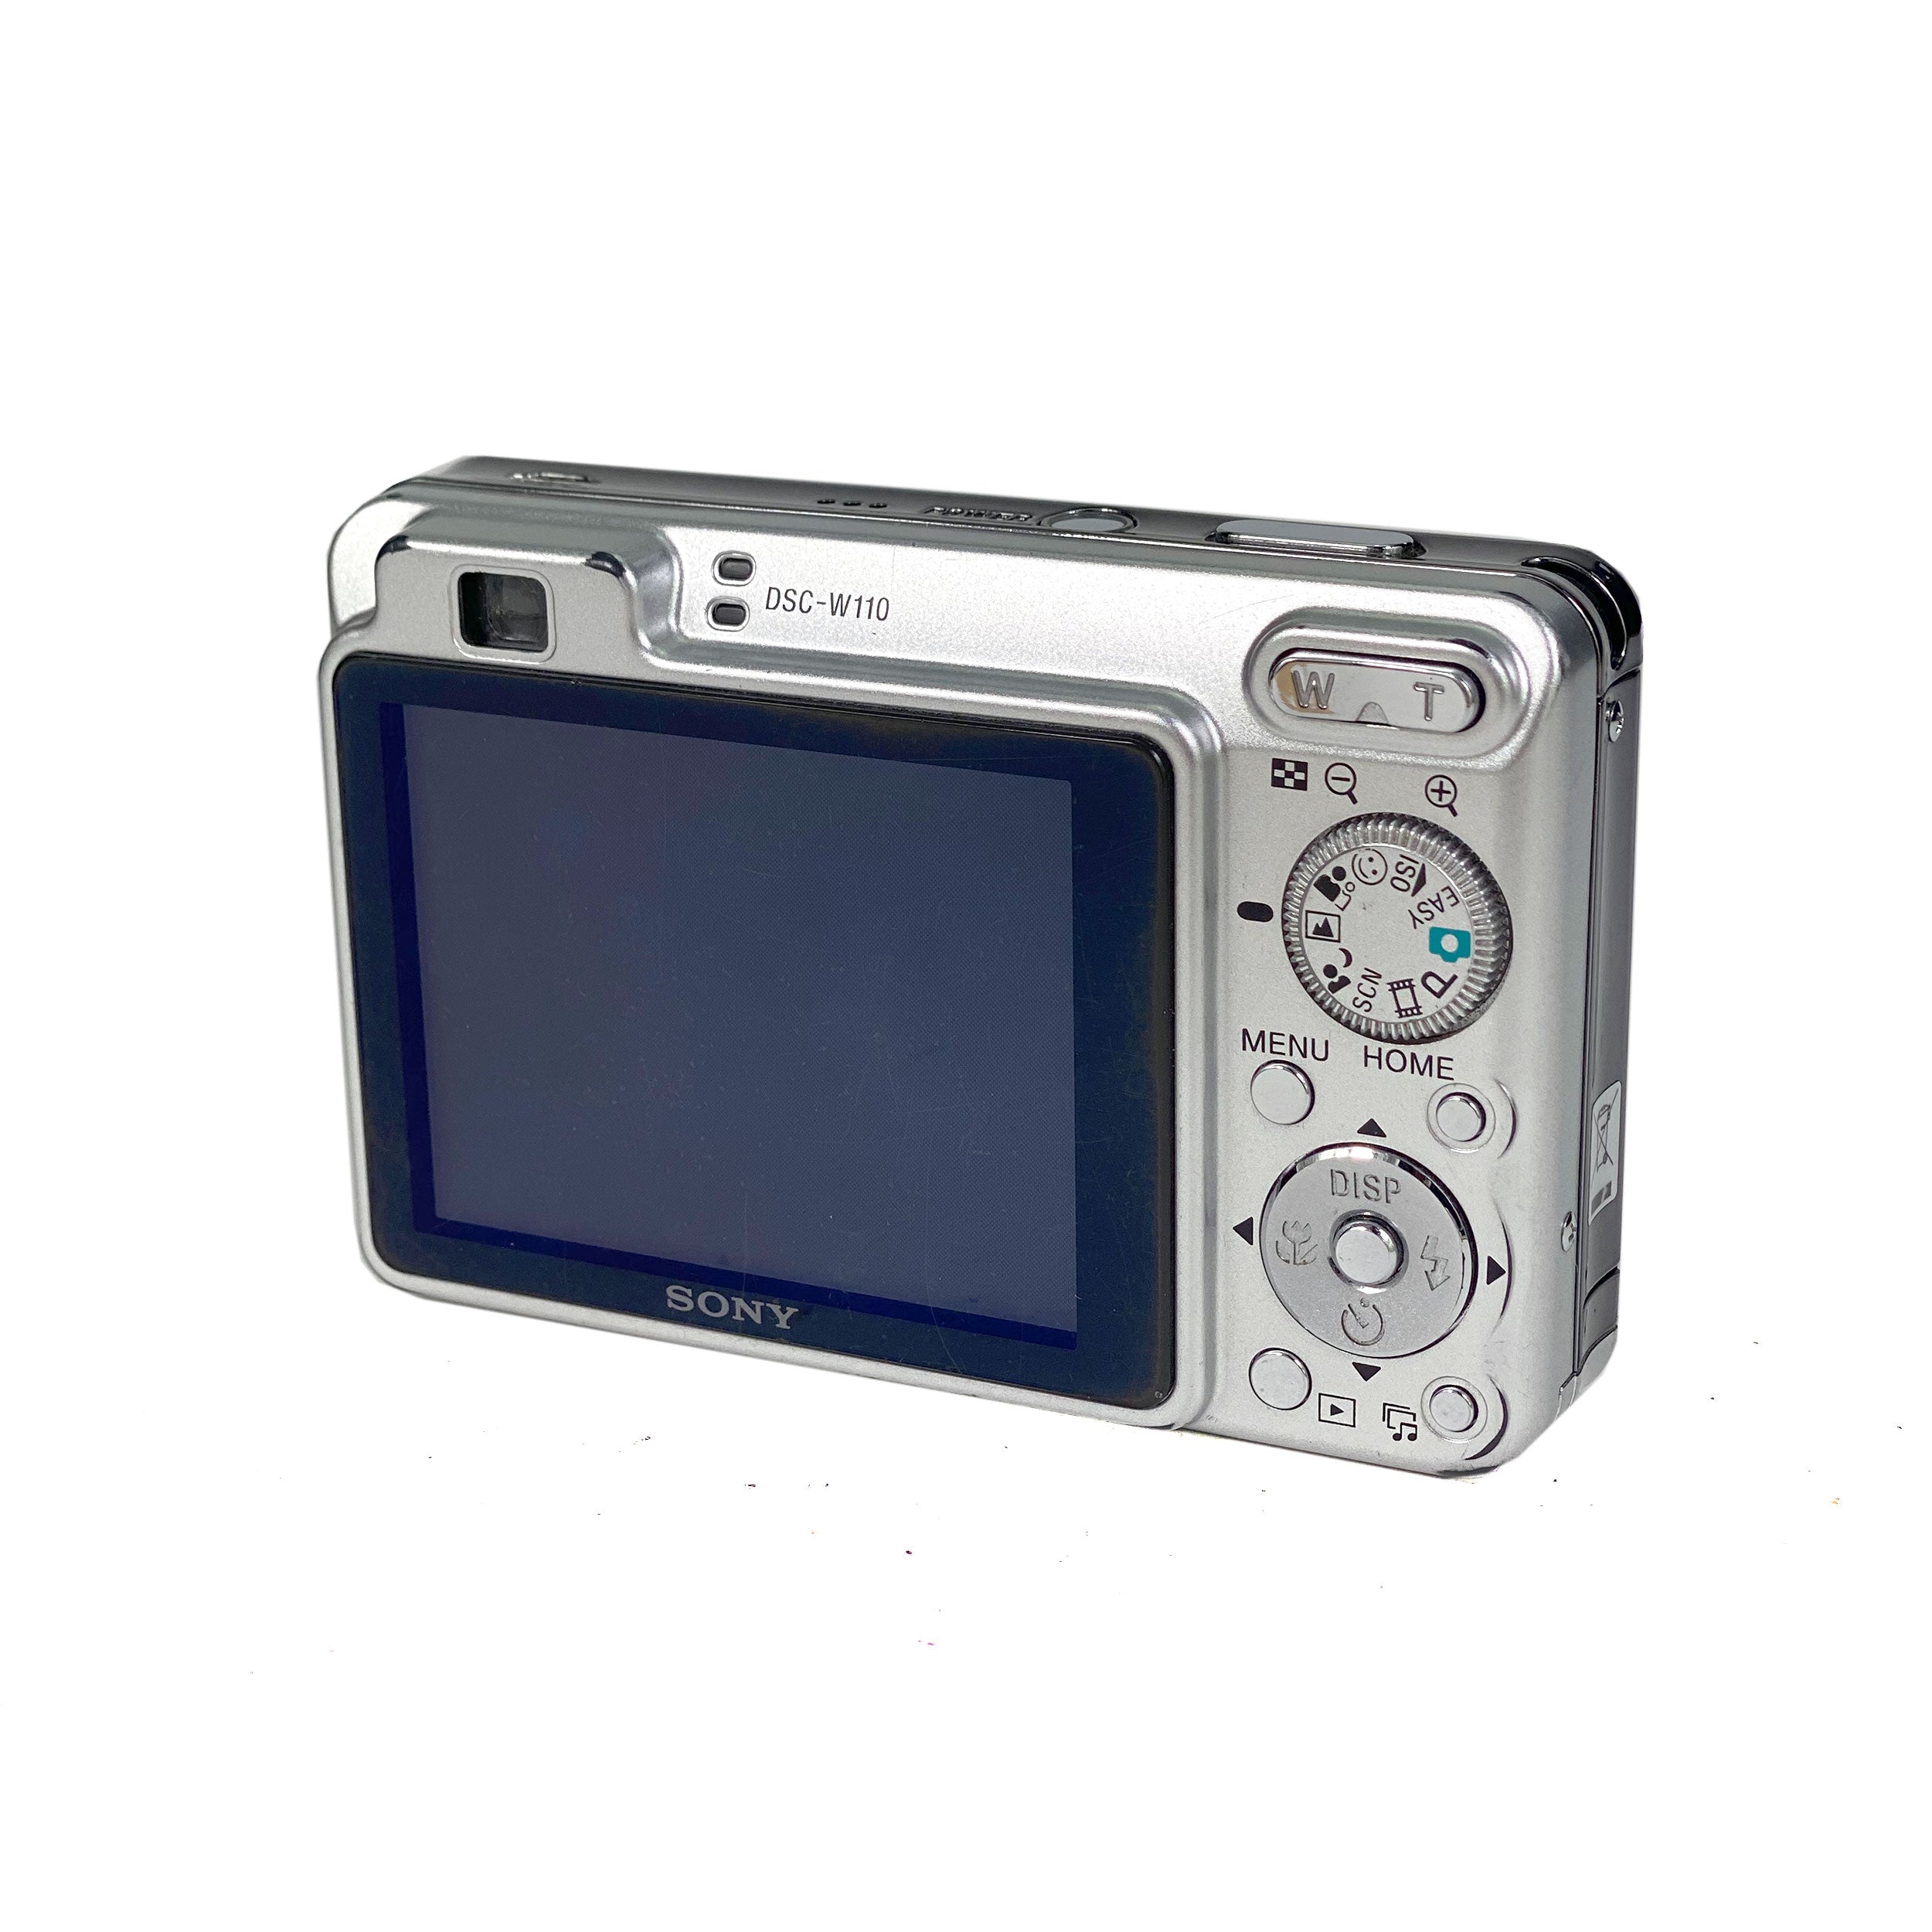 Sony CyberShot DSC-W110 Digital Compact